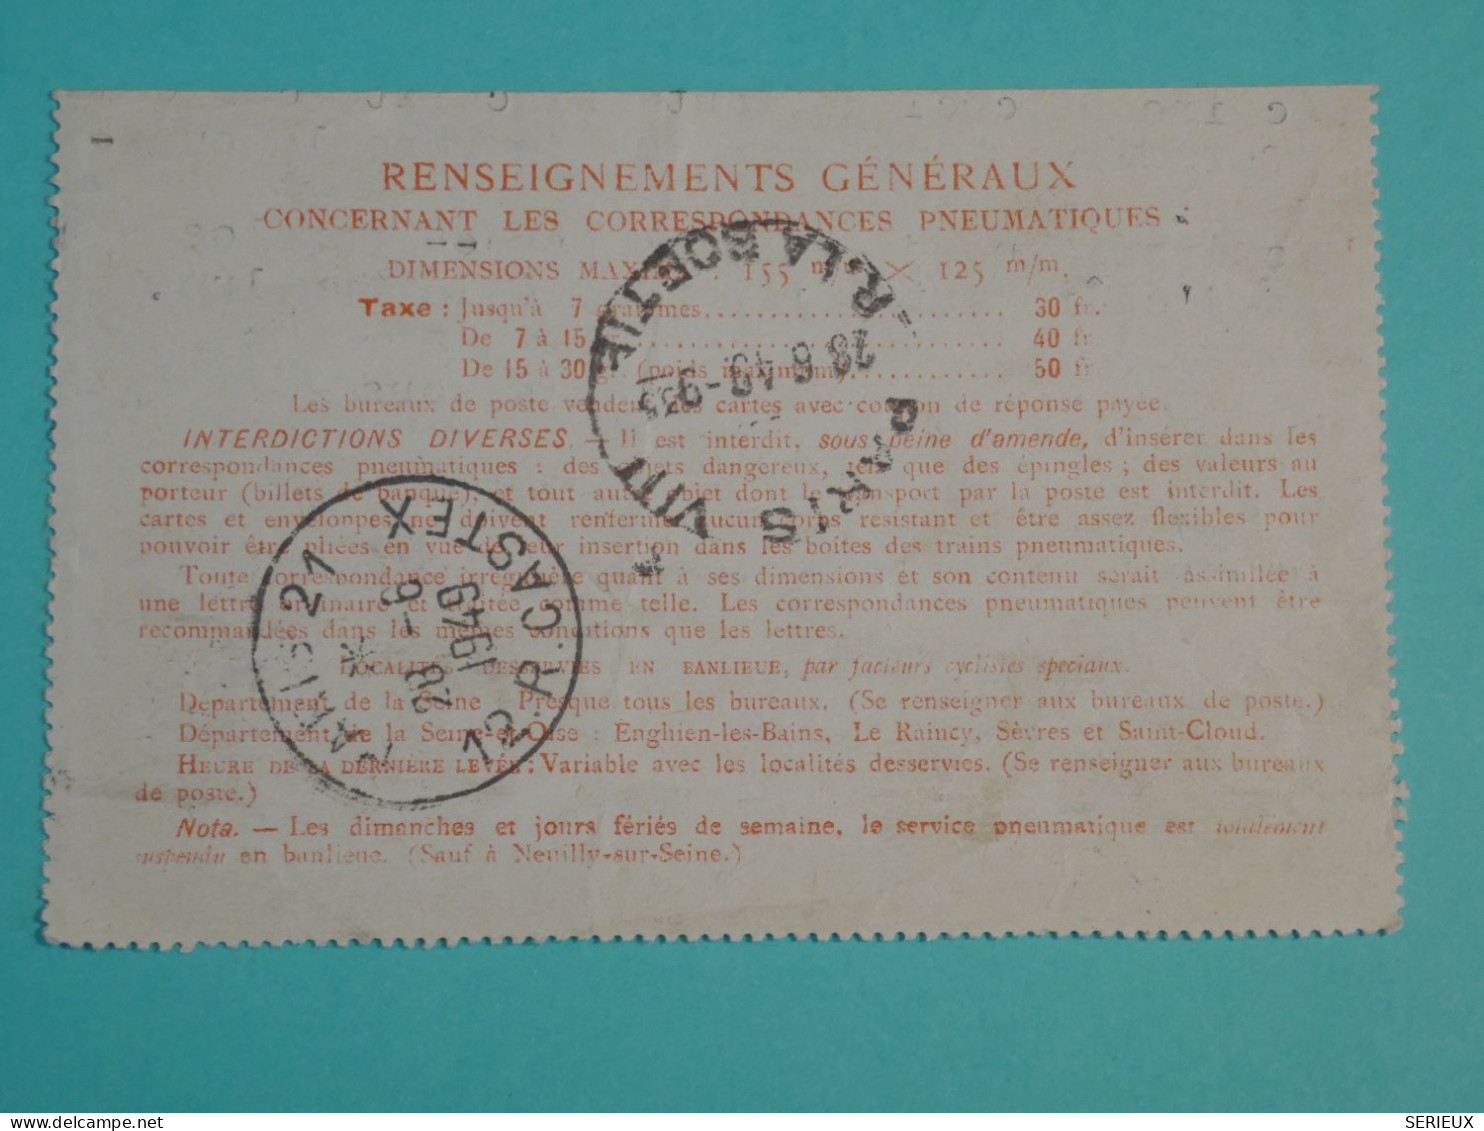 DH20 FRANCE  BELLE  CARTE PNEUMATIQUE  PARIS 1949     ++TELEGRAPHE   ++AFF.  PLAISANT++++++ - Telegraph And Telephone